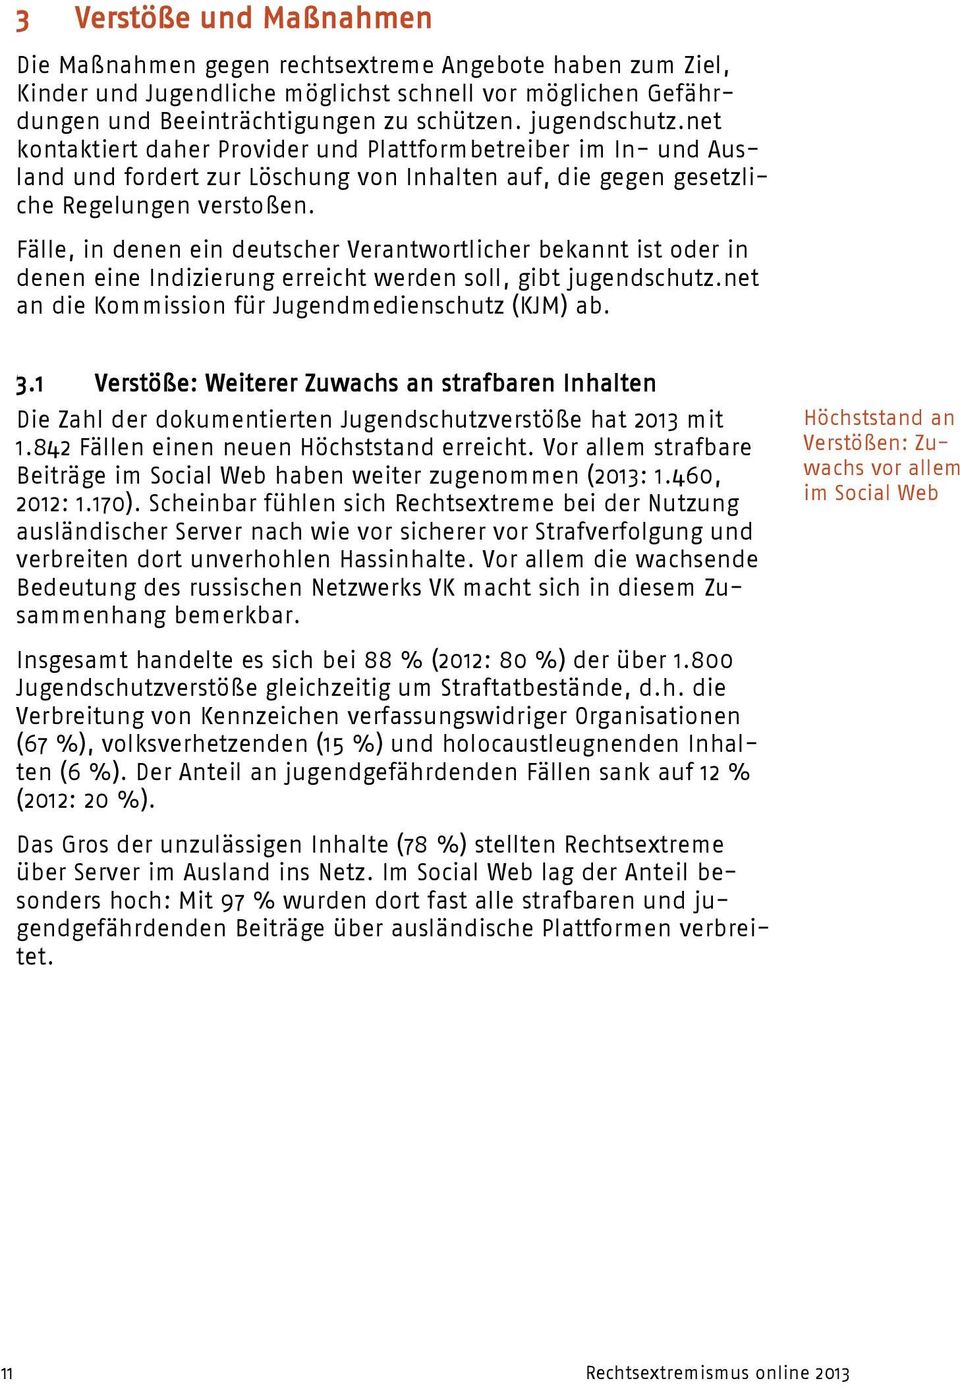 Fälle, in denen ein deutscher Verantwortlicher bekannt ist oder in denen eine Indizierung erreicht werden soll, gibt jugendschutz.net an die Kommission für Jugendmedienschutz (KJM) ab. 3.